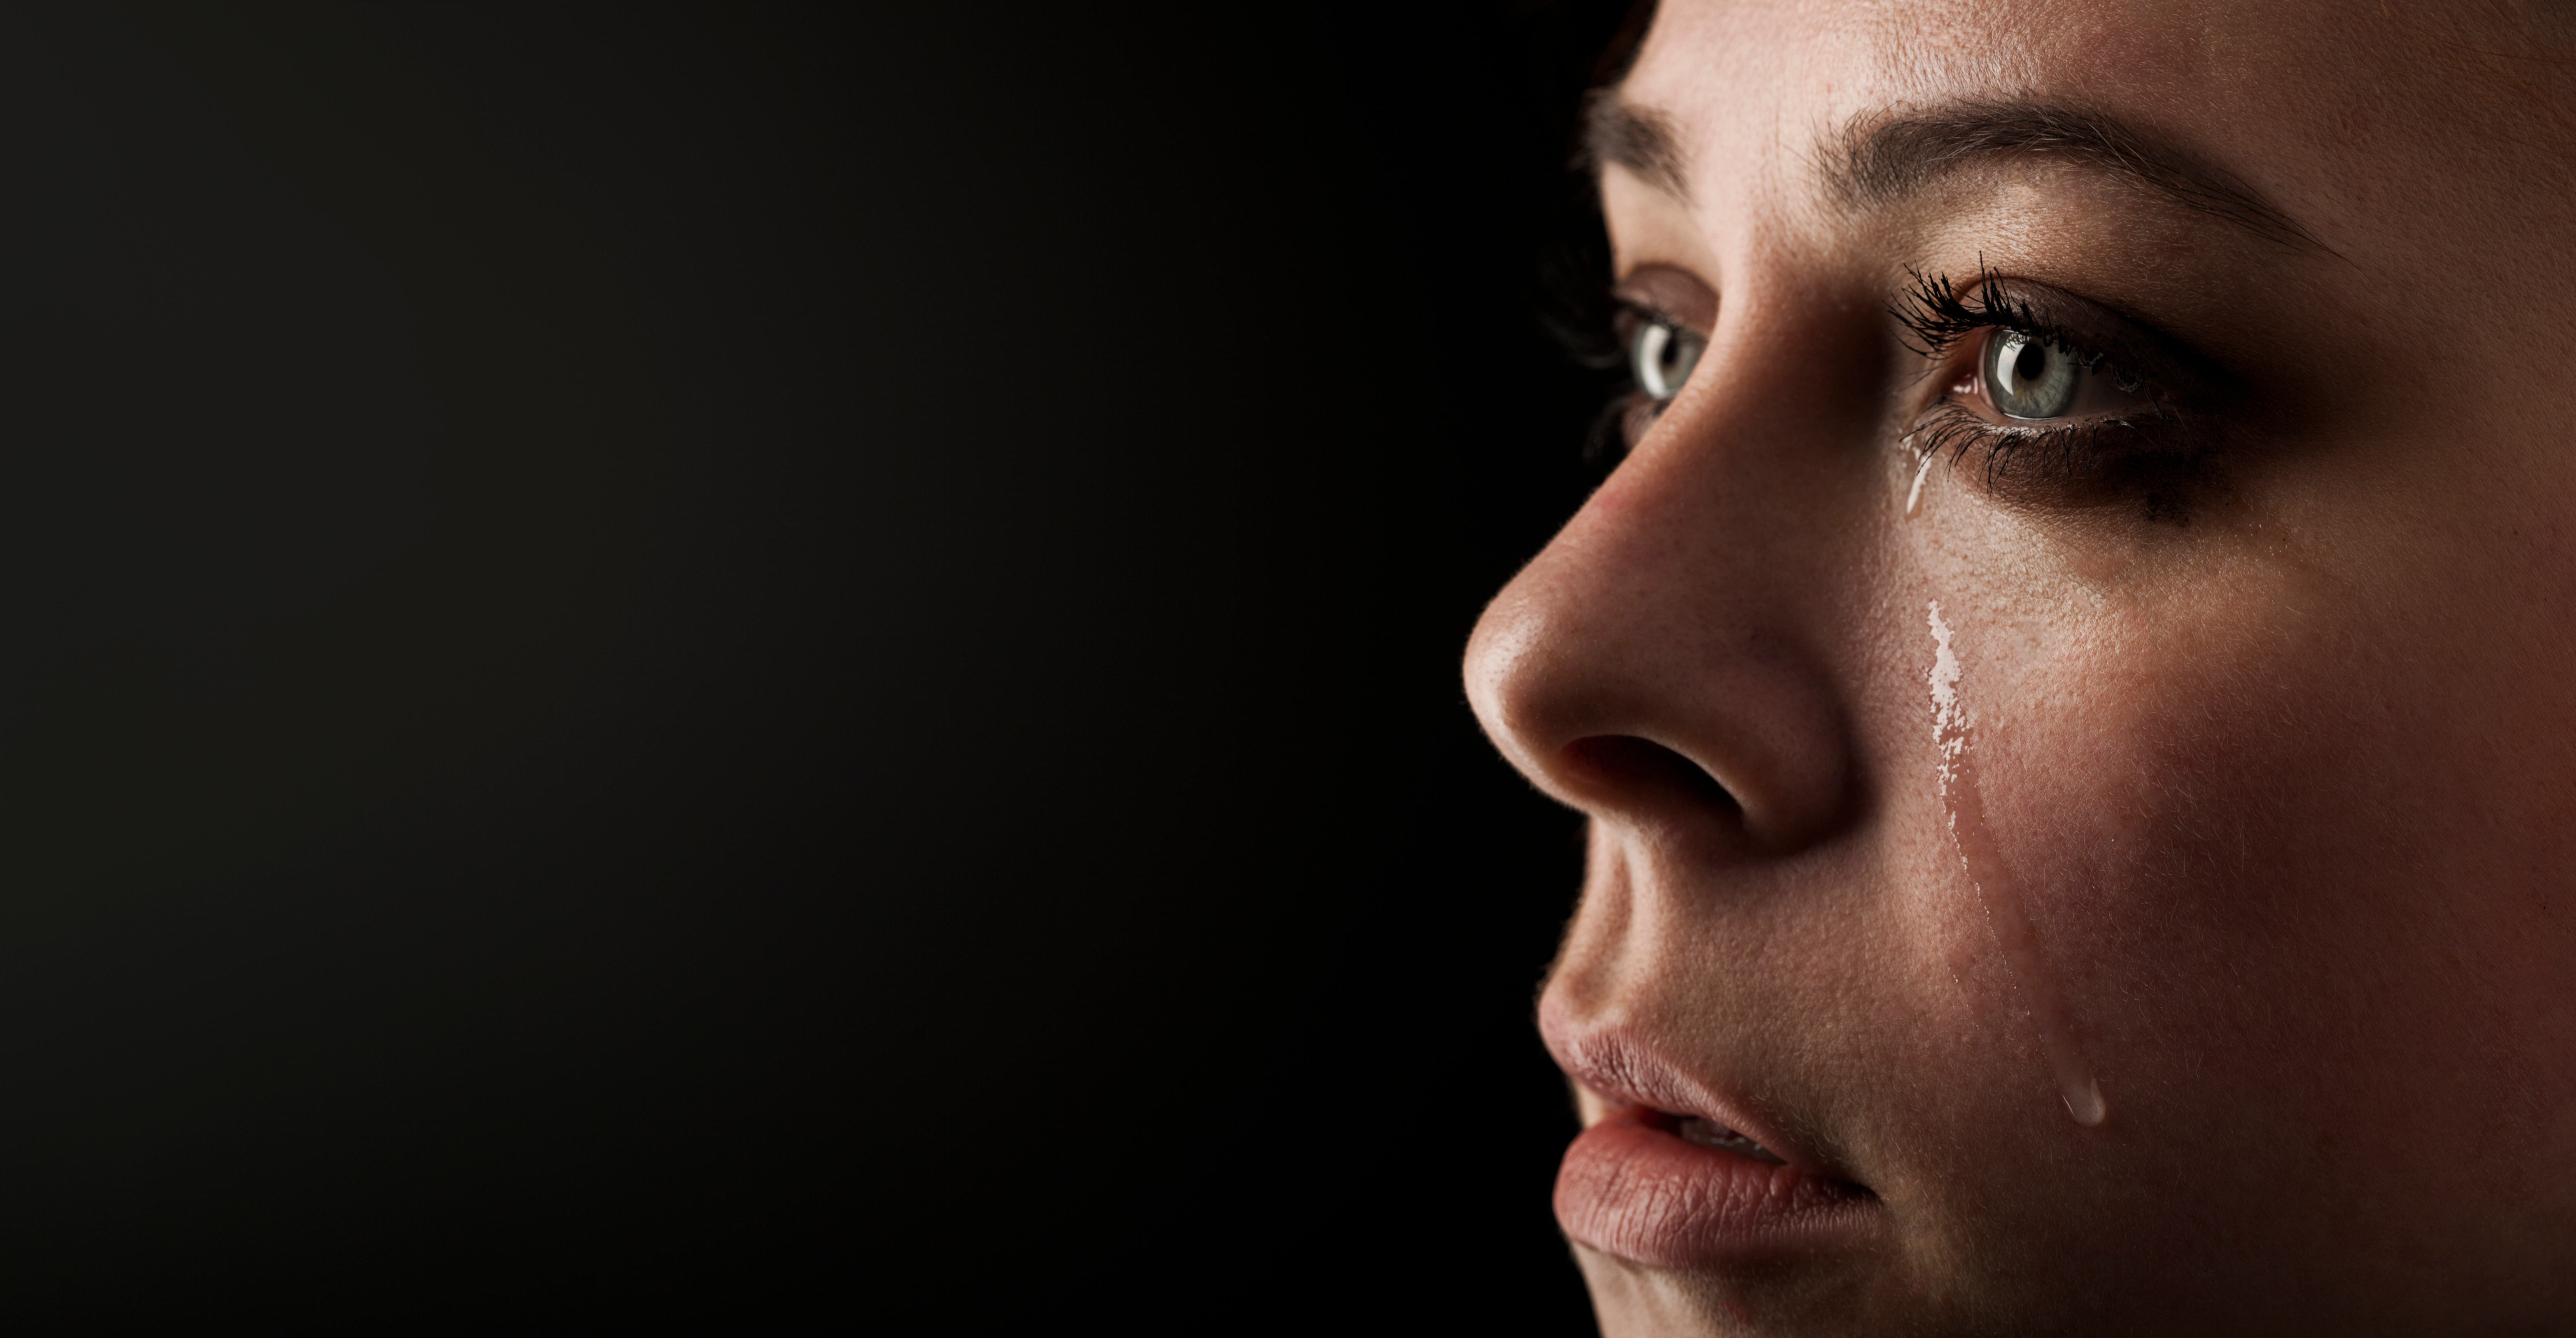 Hermosa chica llora sobre fondo negro. | Fuente: Shutterstock